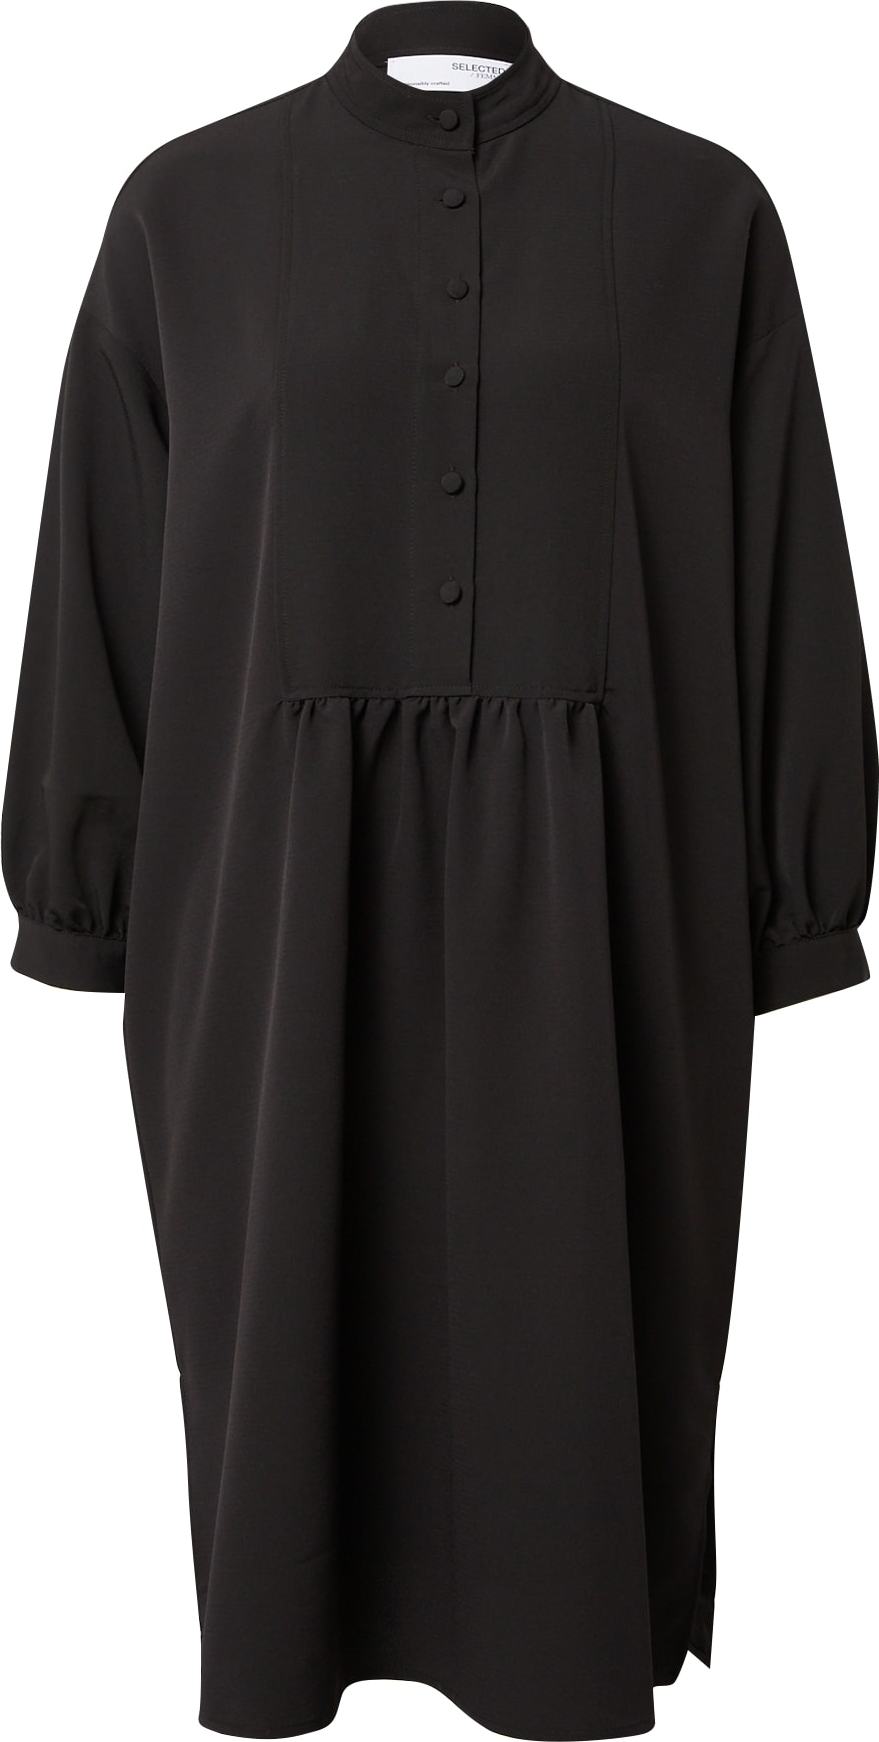 SELECTED FEMME Košilové šaty 'Gianna' černá